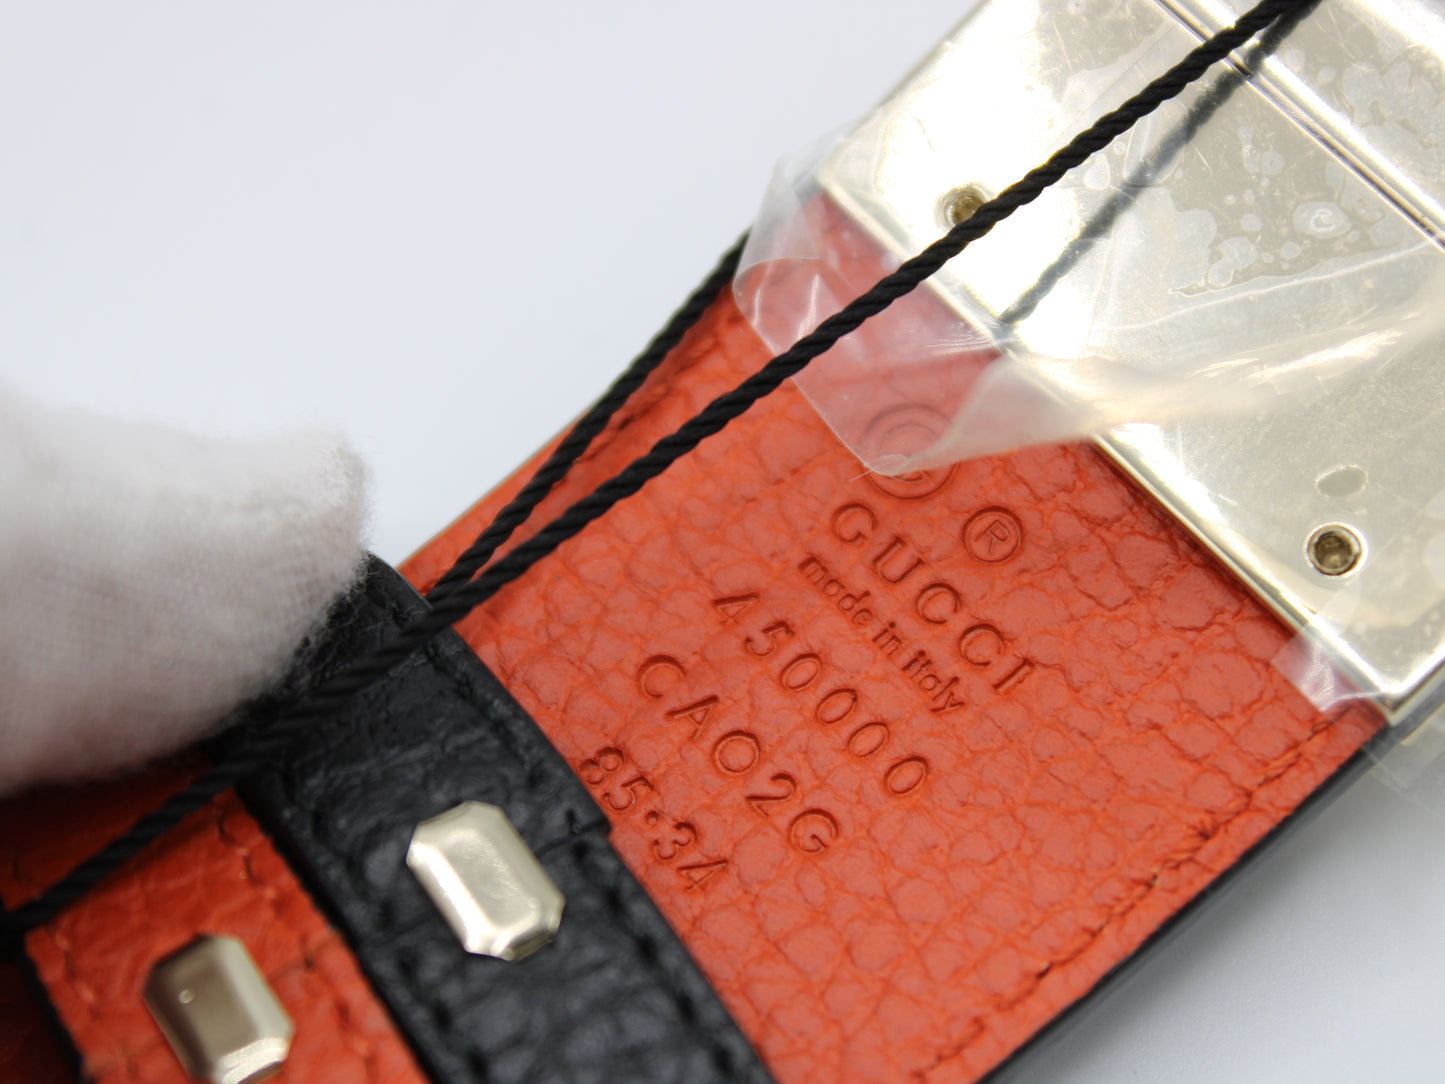 Gucci 1973 Reversible Belt Black Orange Calfskin Leather New serial number